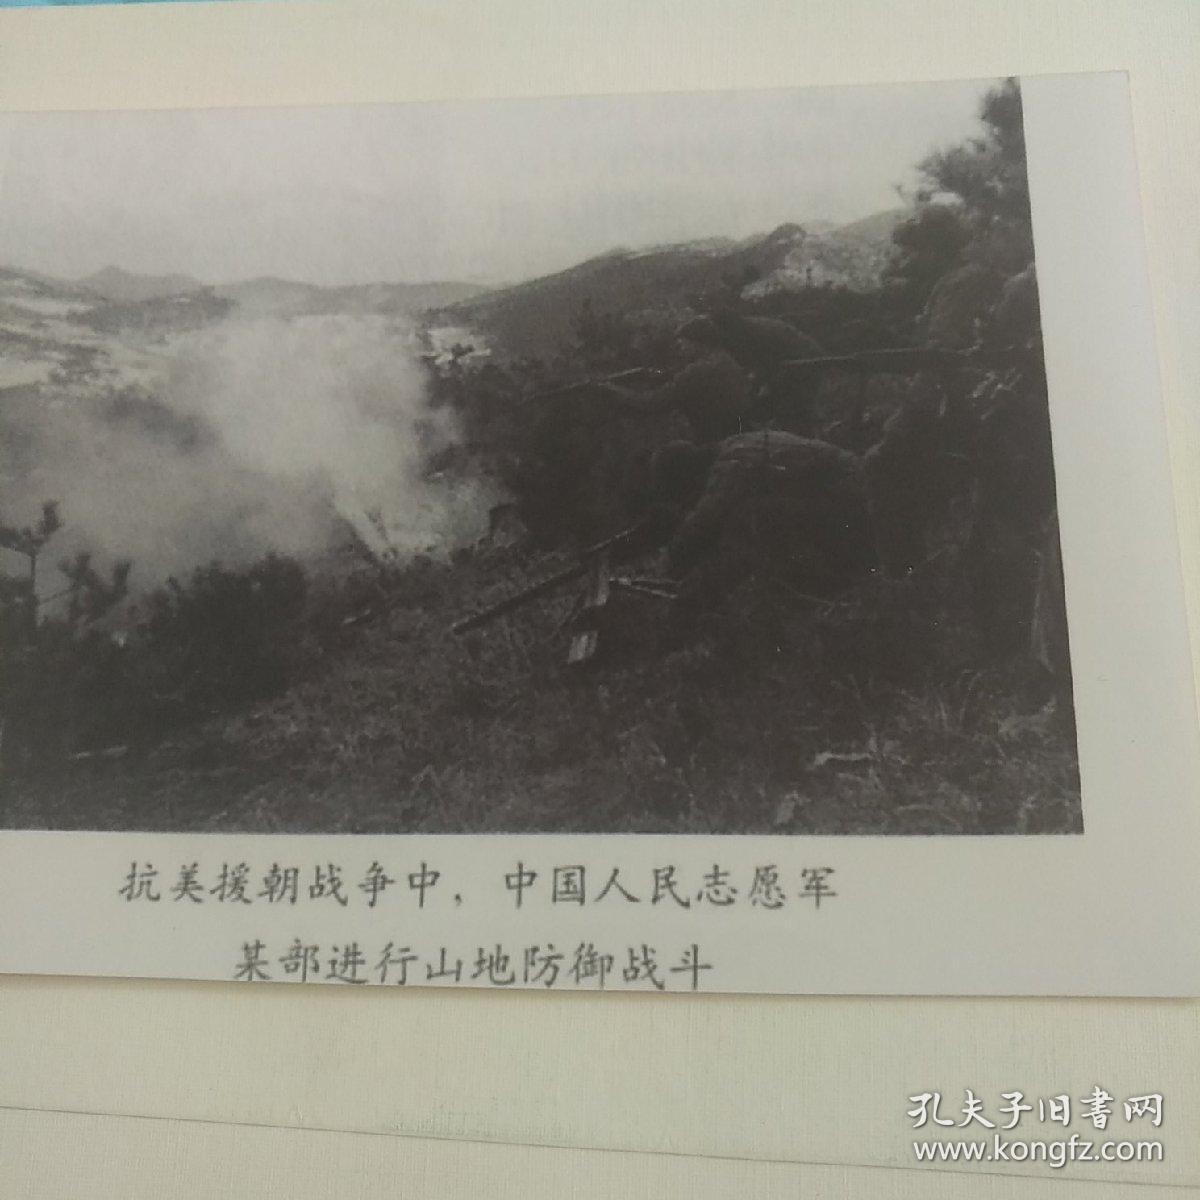 战地照片--抗美援朝战争中志愿军某部进行山地防御战斗黑白照片一张13cmx9cm